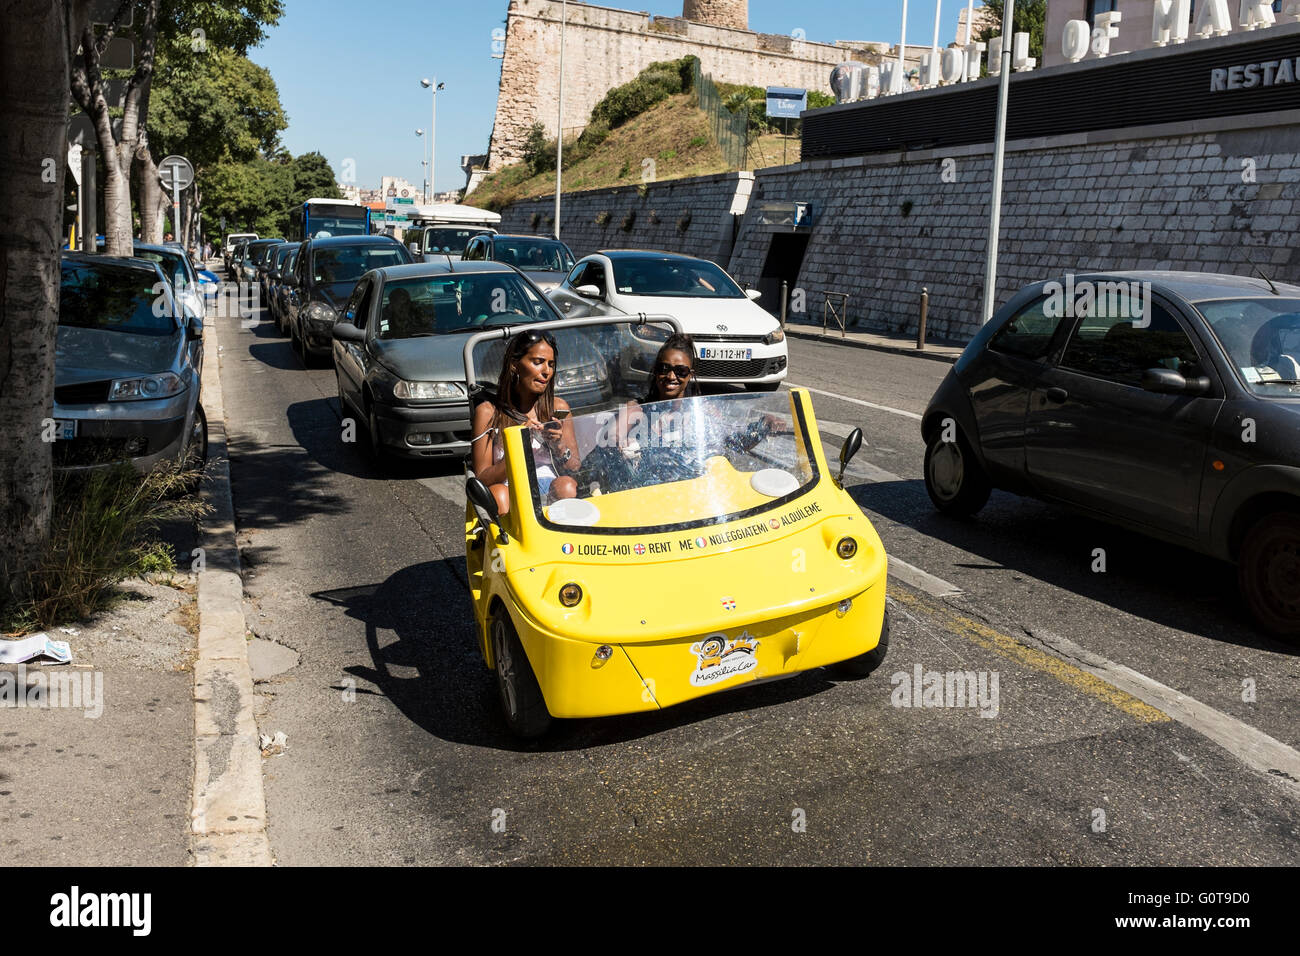 Gelbe Massilia Auto, kleine 2-Sitzer 3 Rädern Cabrio Kraftfahrzeug zur Miete für Sightseeing in Marseille, Frankreich Stockfoto